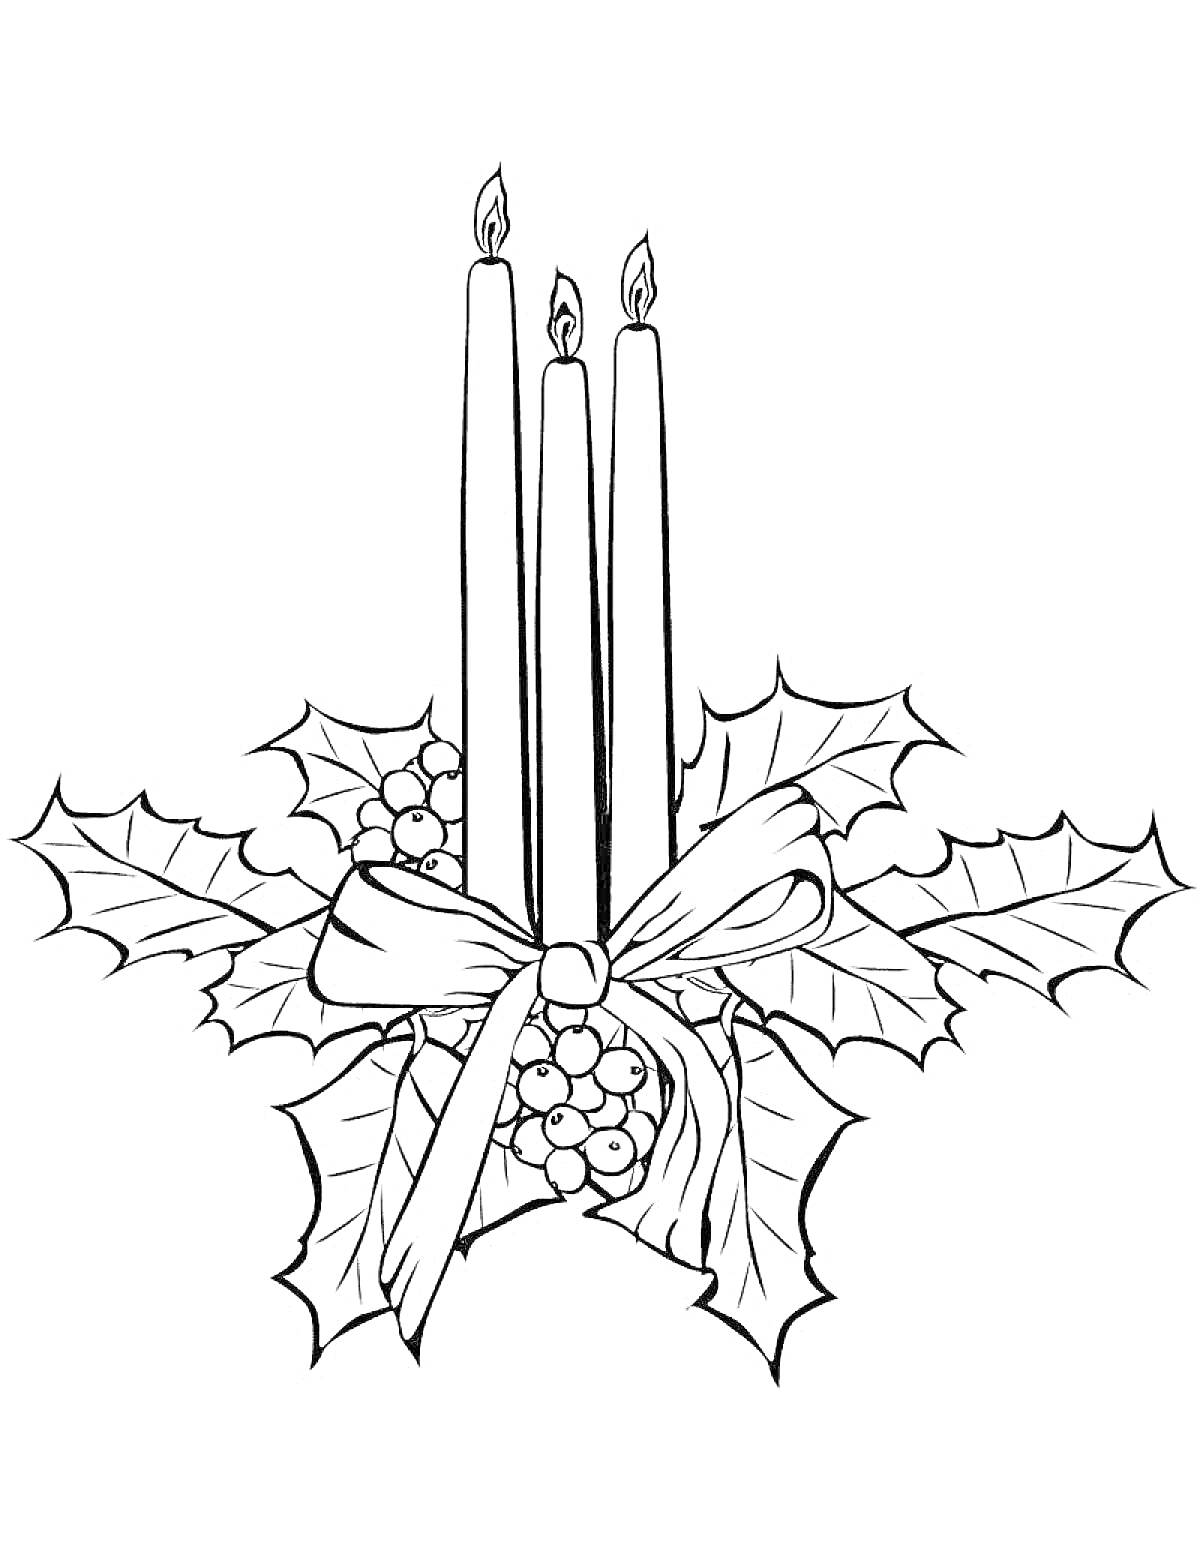 Три свечи с пылающими огоньками, украшенные листьями остролиста, ягодами и бантом